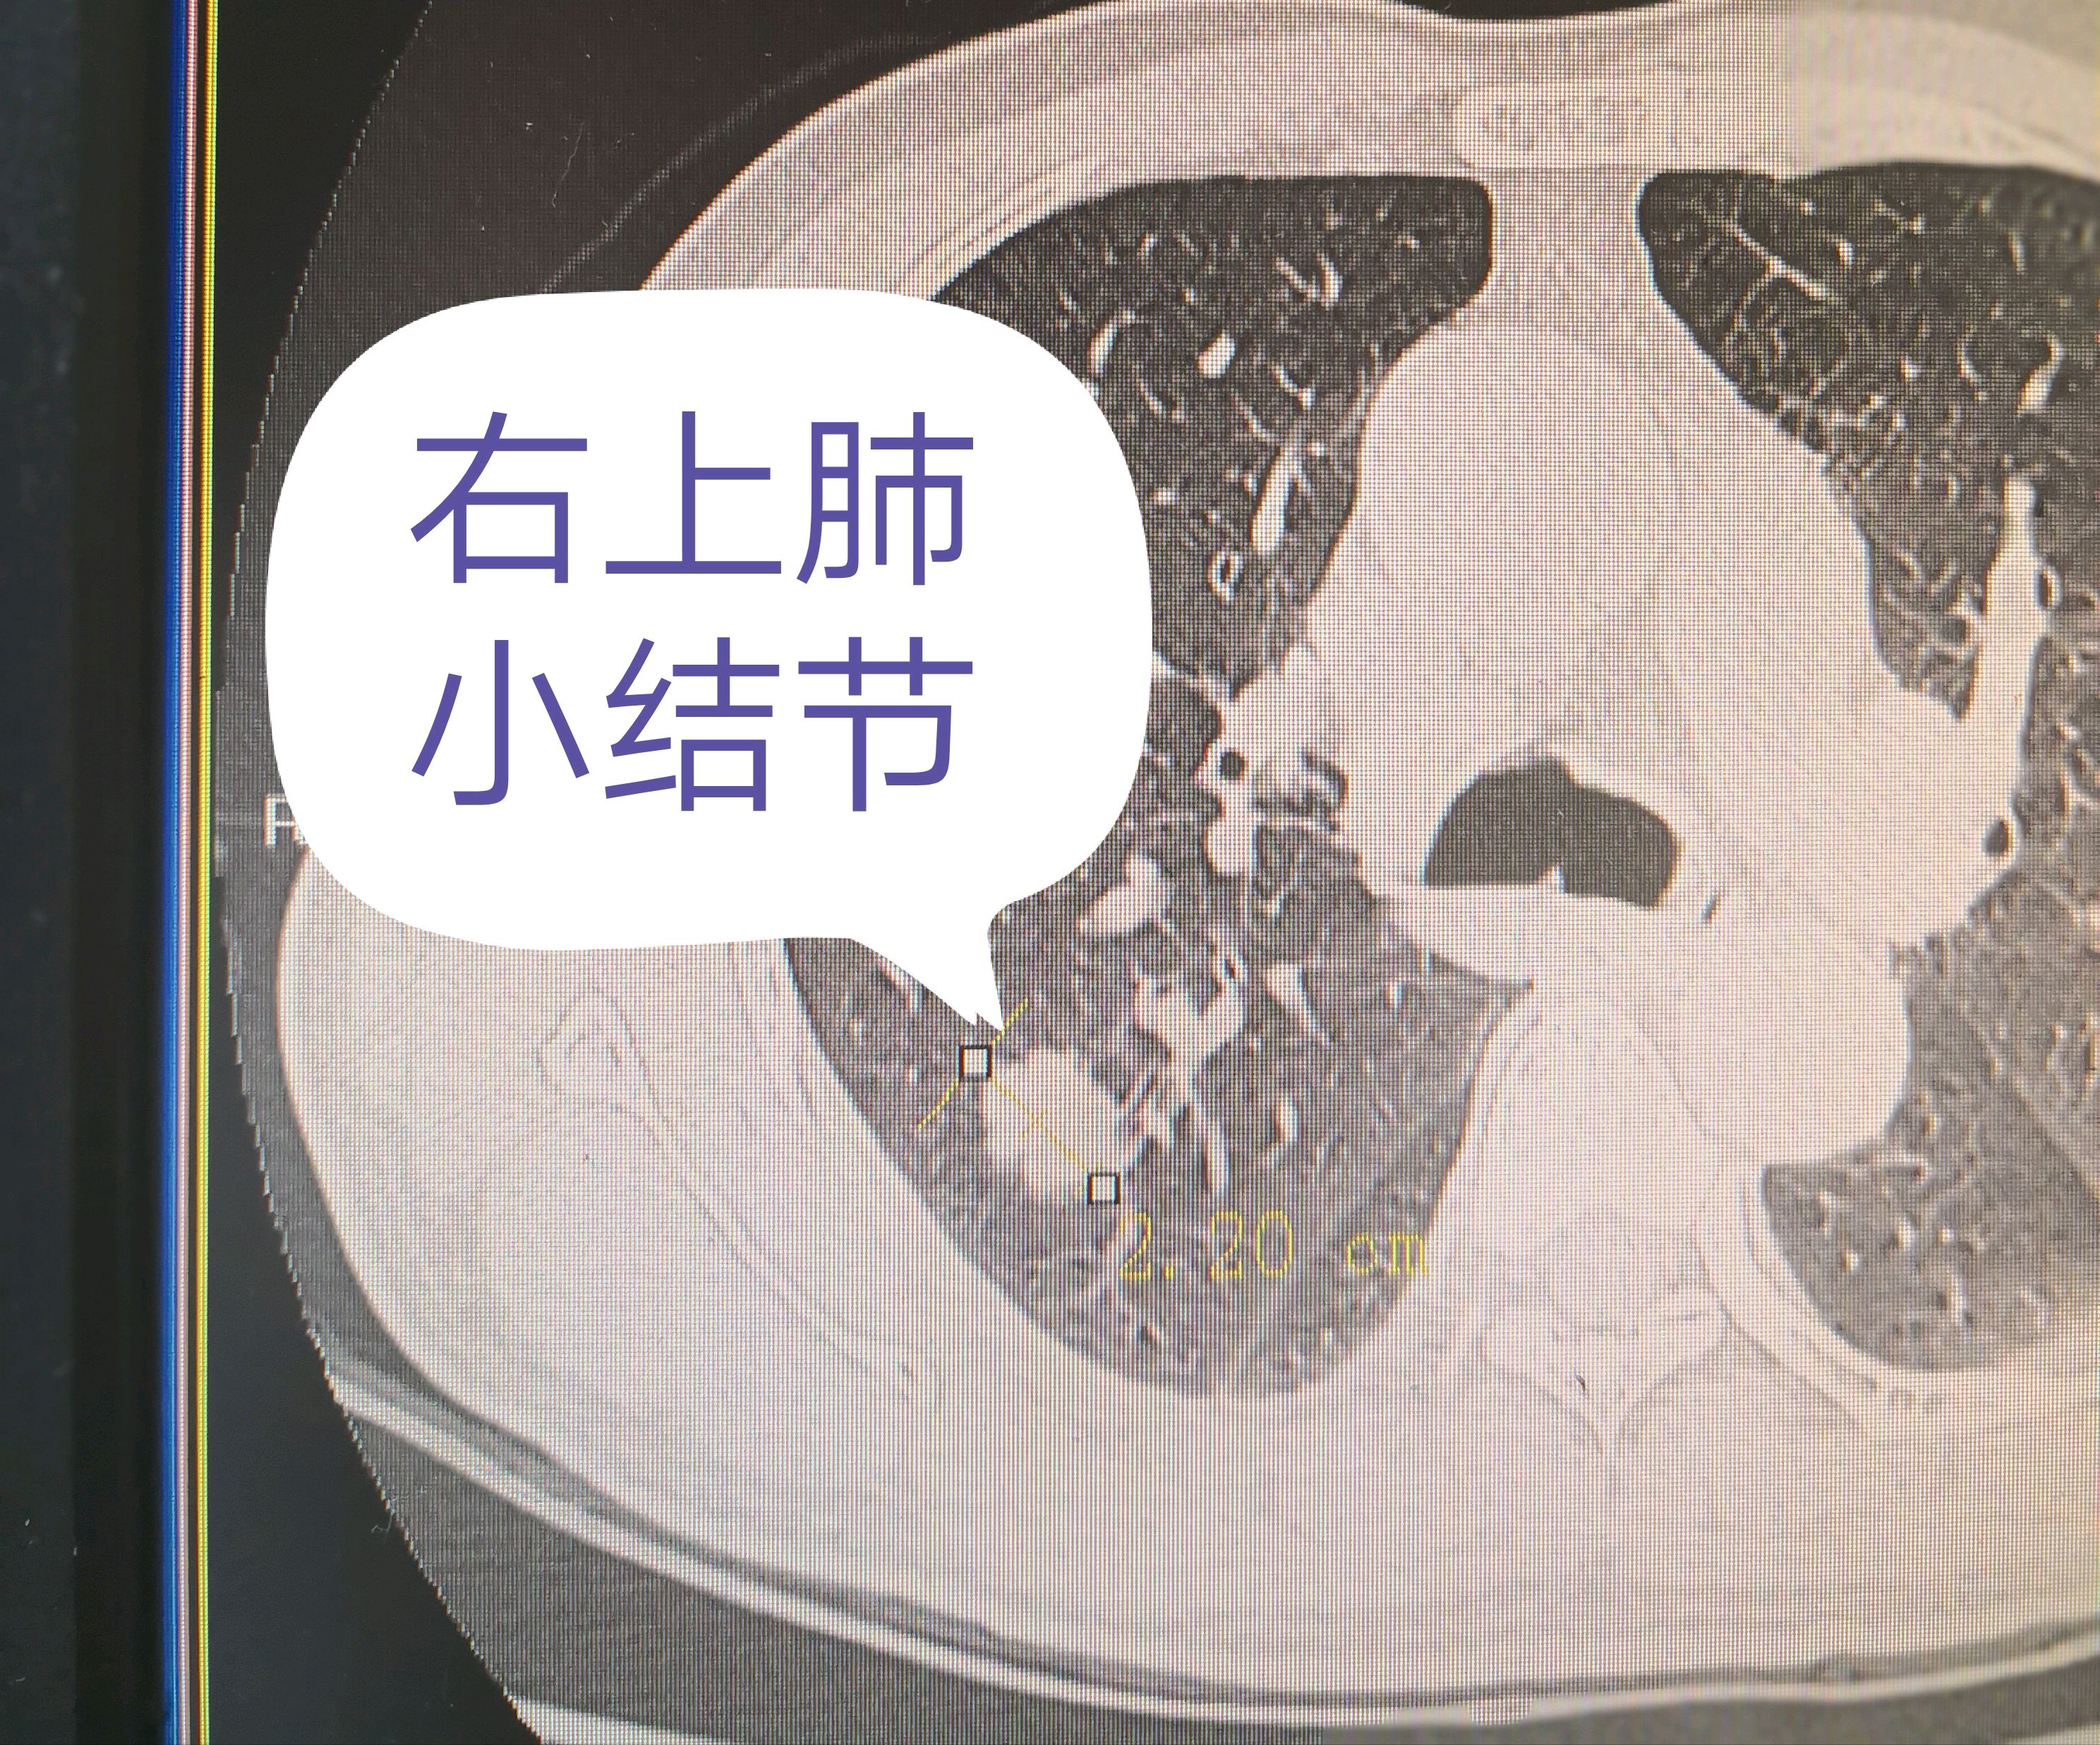 肺部肿瘤胸片图片